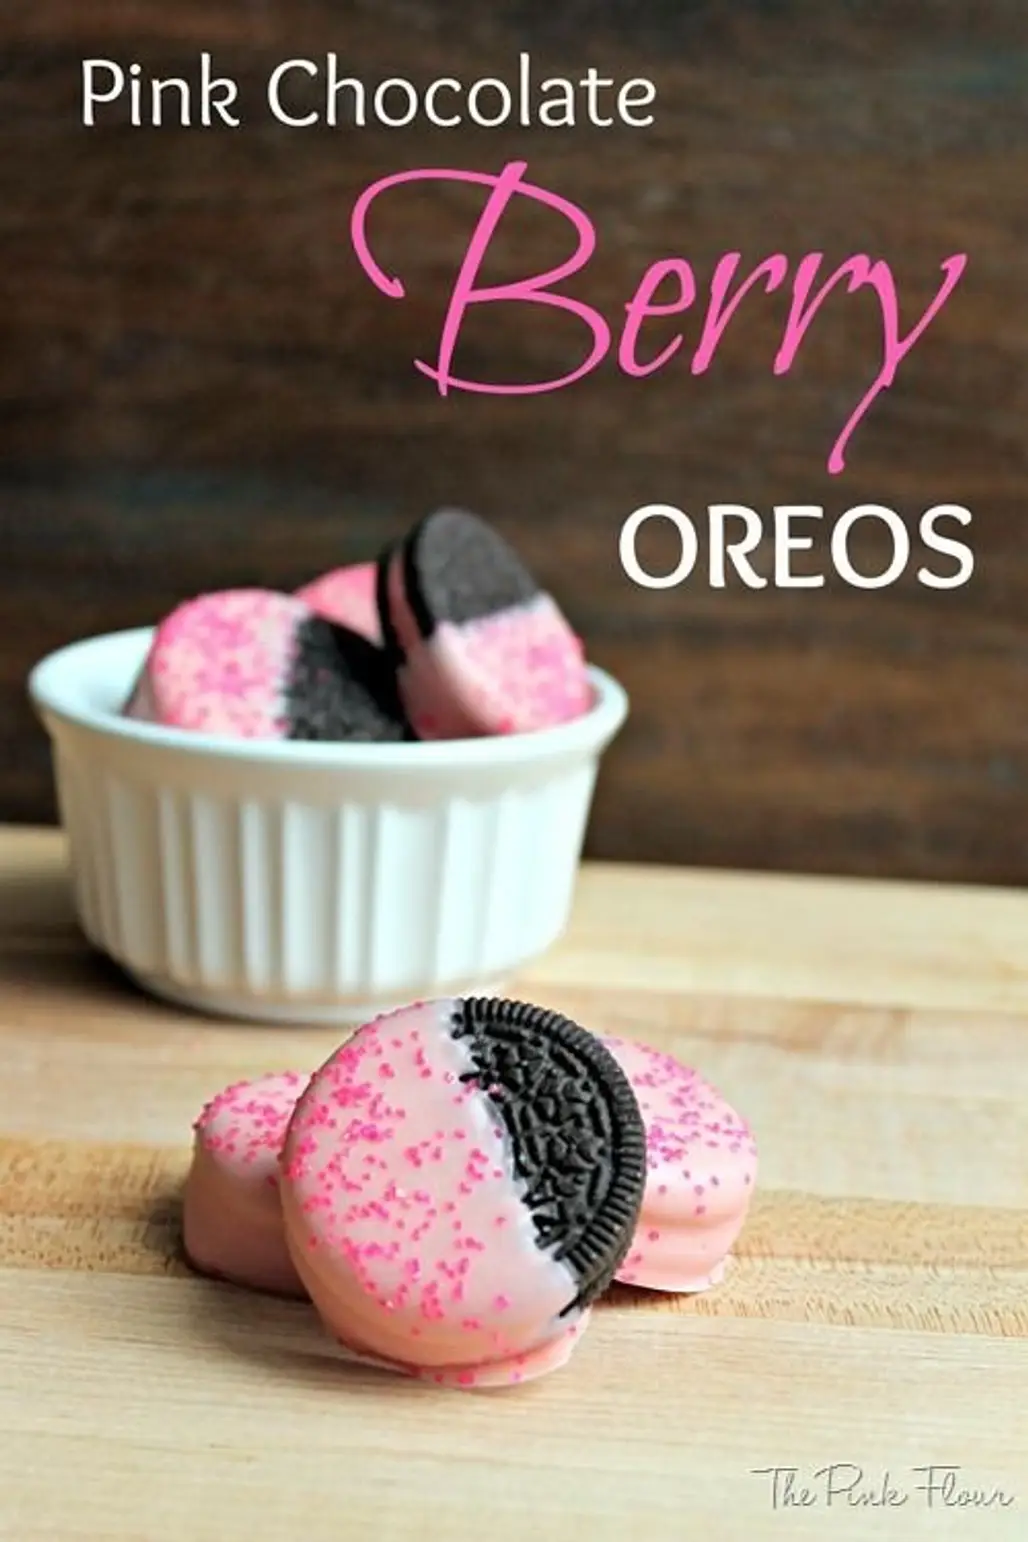 Pink Chocolate Berry Oreos